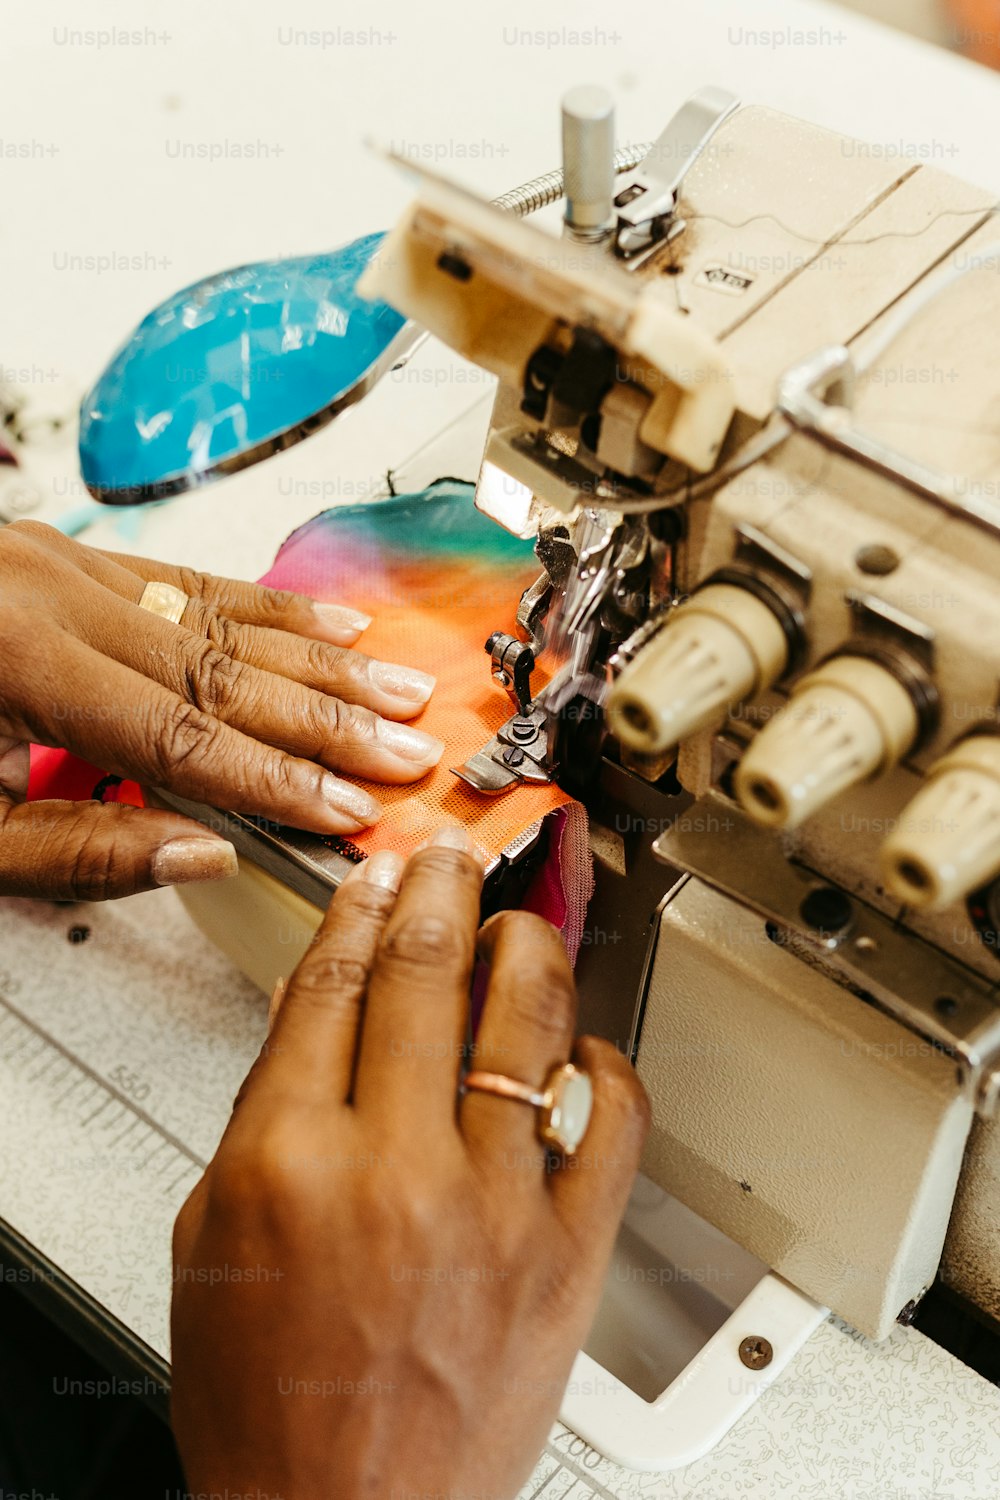 女性�がミシンを使って布を縫っている